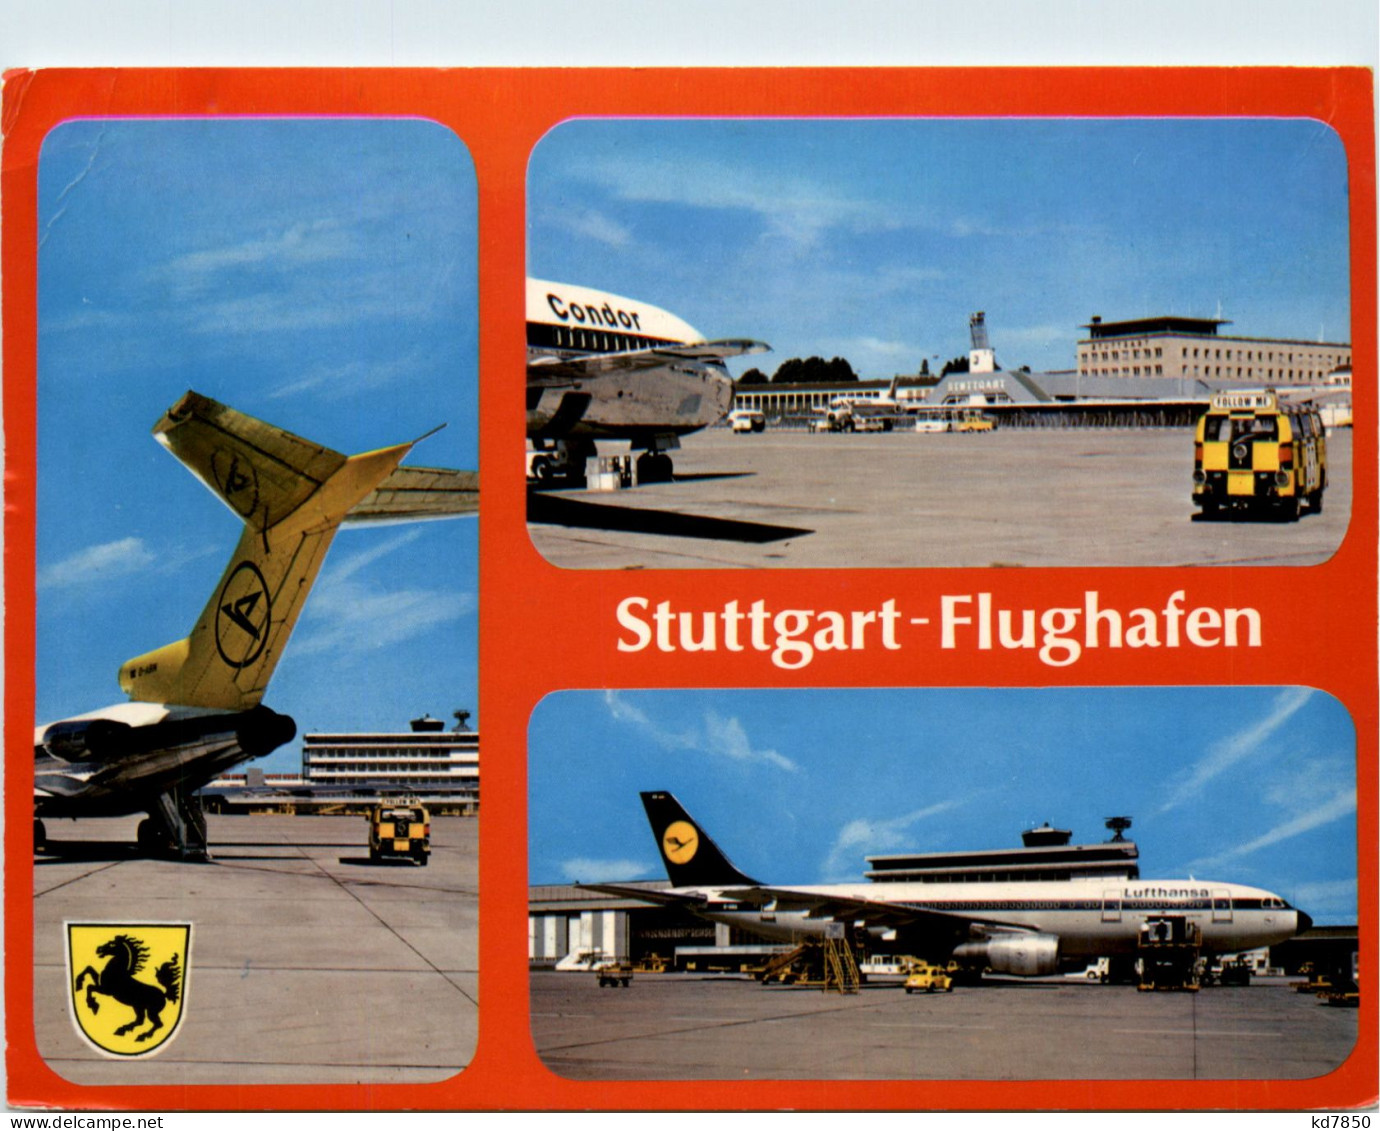 Stuttgart Flughafen - Stuttgart